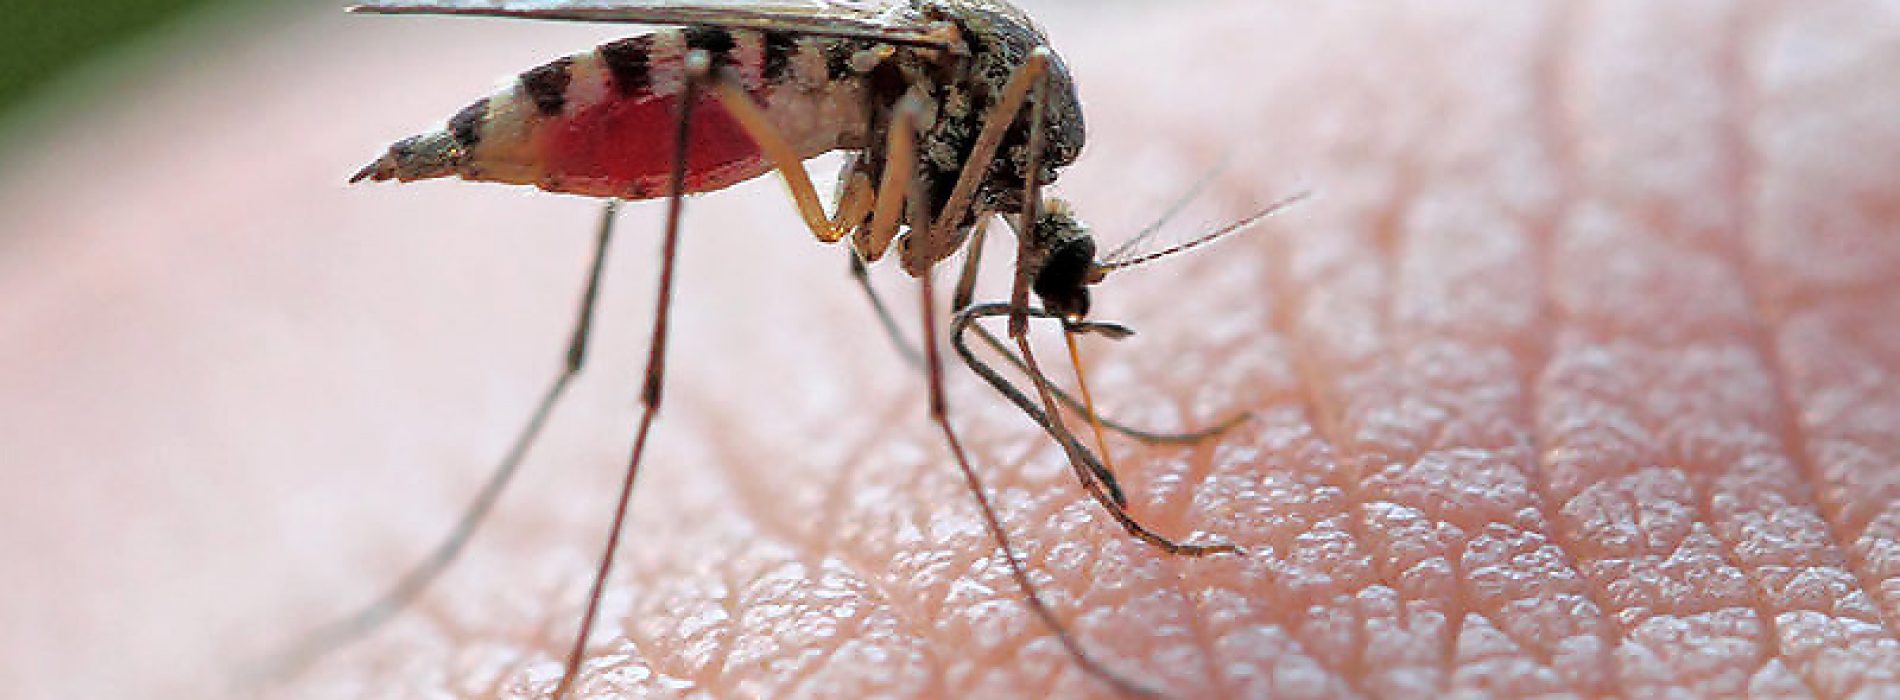 Deze 7 dingen zorgen ervoor dat muggen het vooral op jou hebben gemunt